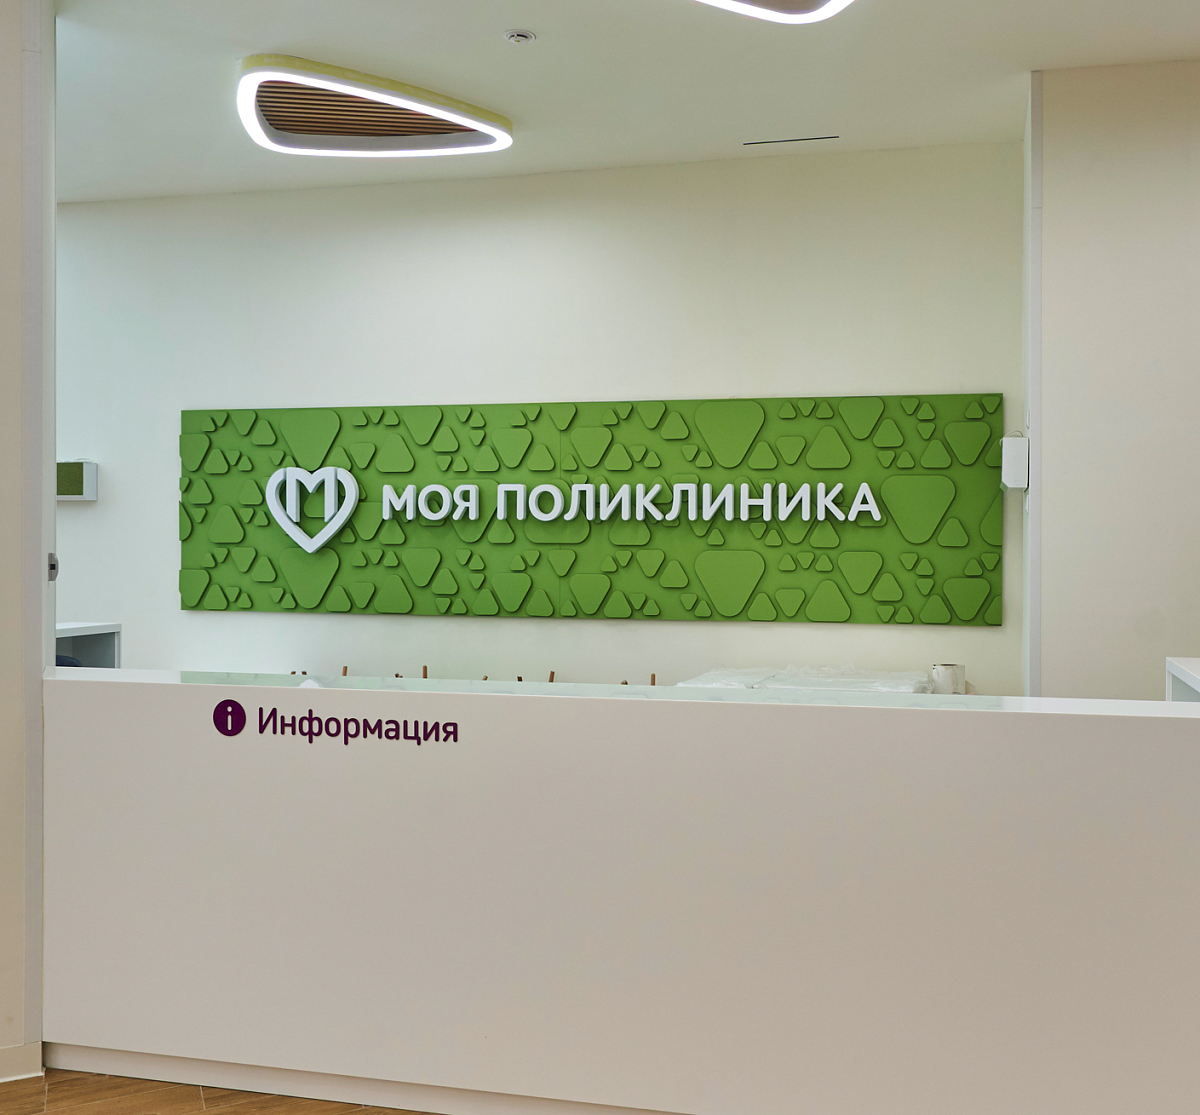 В Москве введут 11 медицинских объектов до конца года   